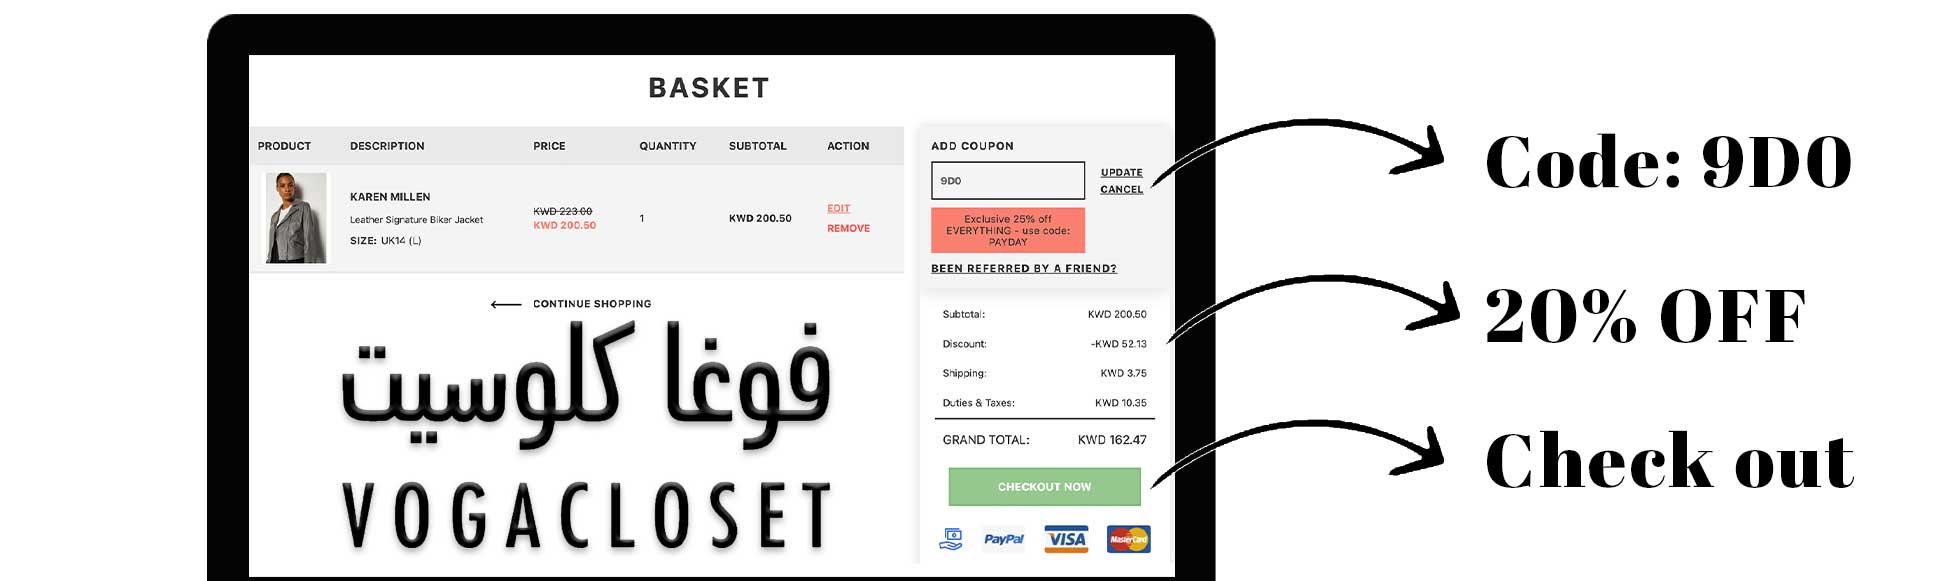 vogacloset discount code kuwait